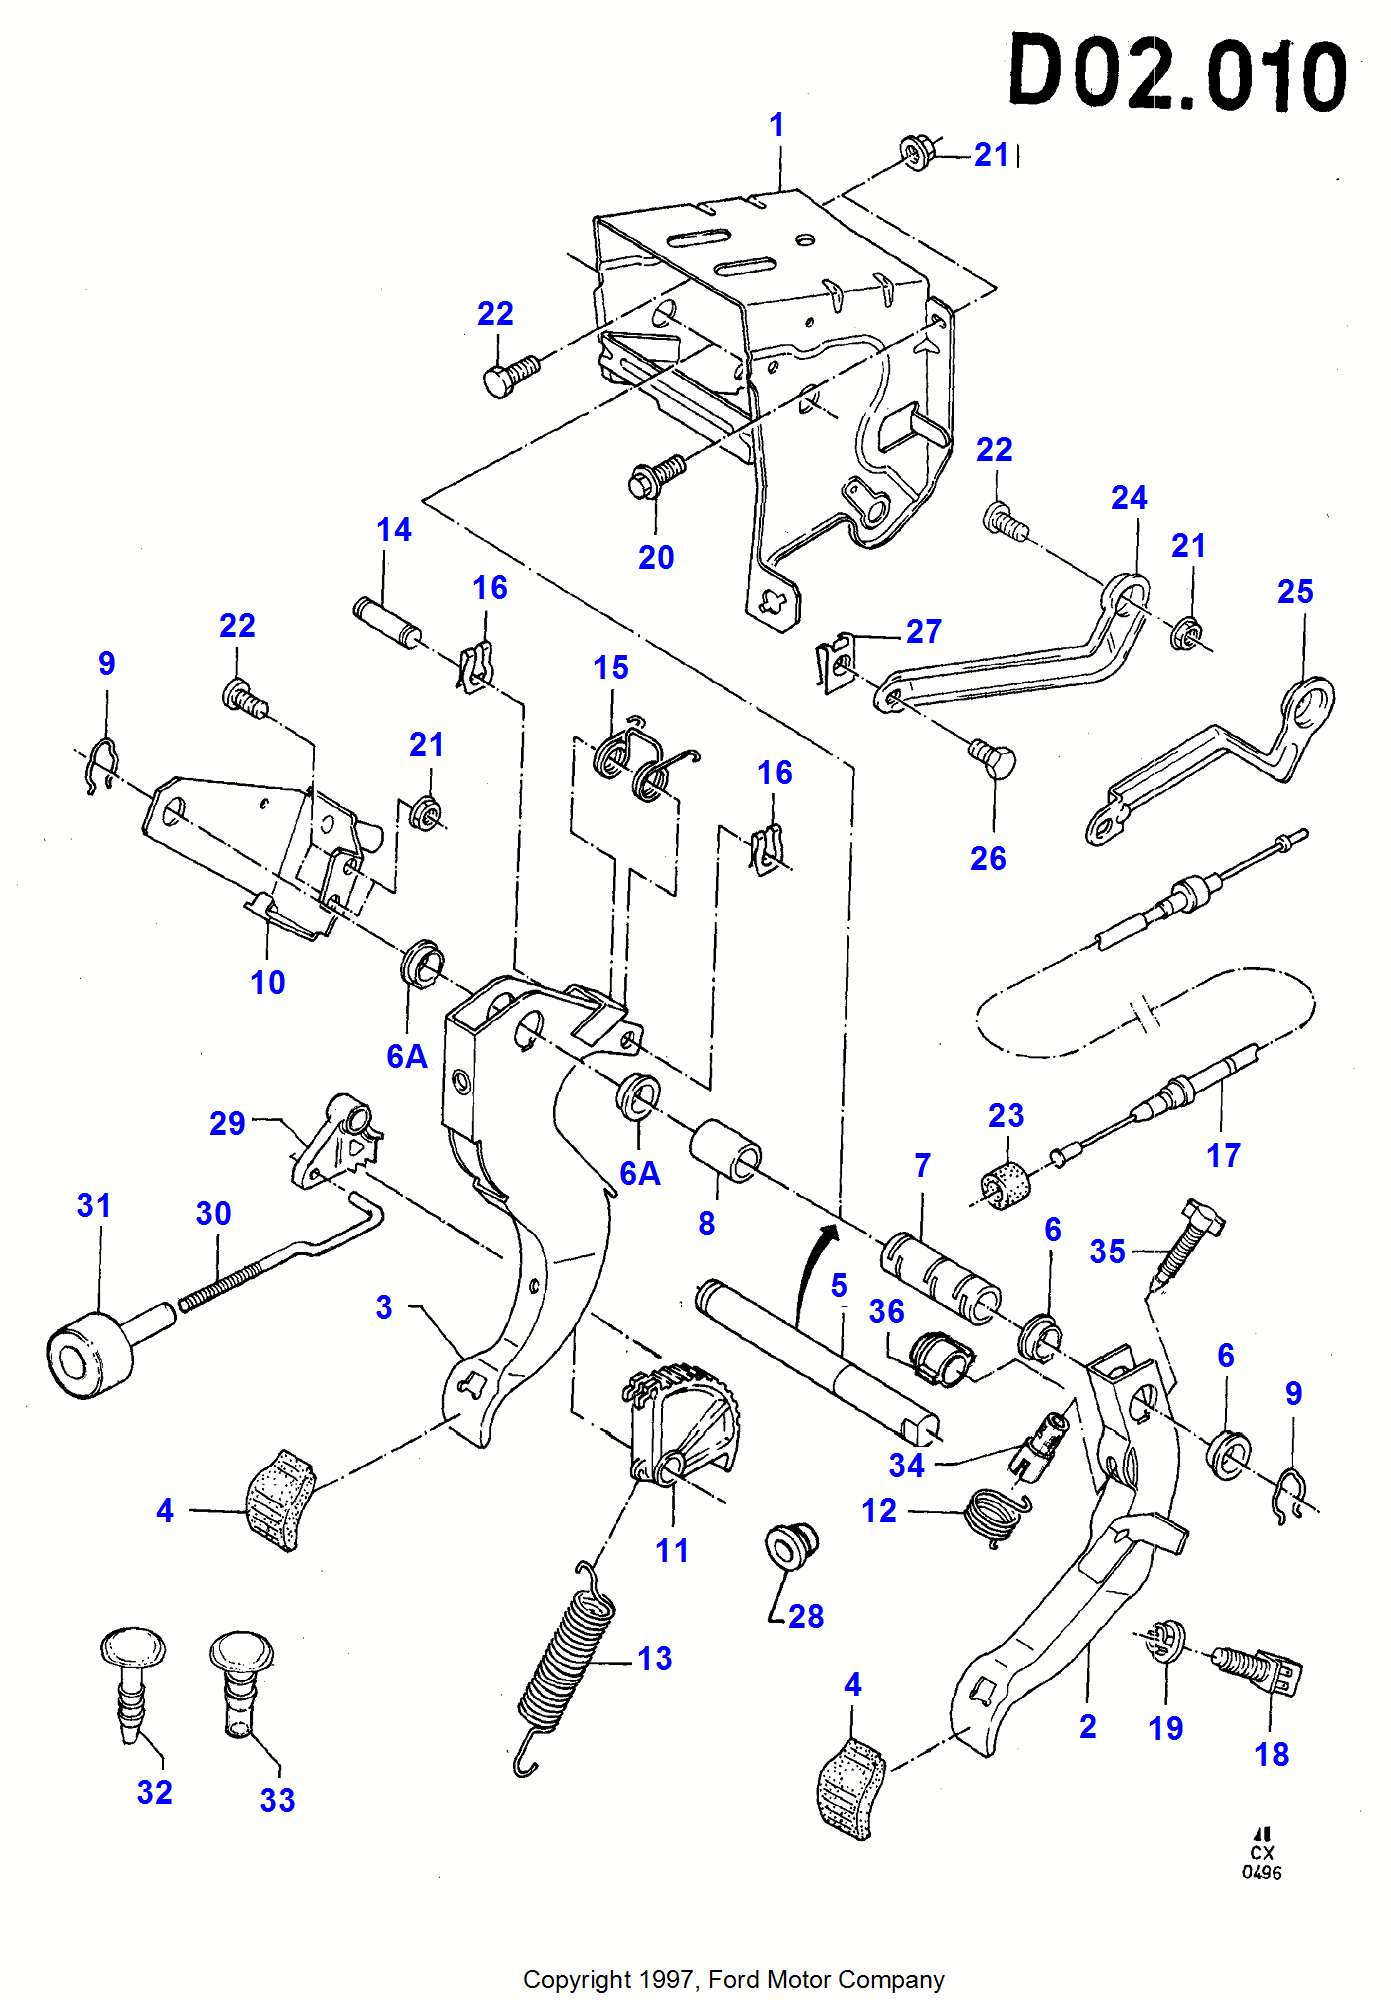 Brake And Clutch Controls для Ford Fiesta Fiesta 1989-1996               (CX)